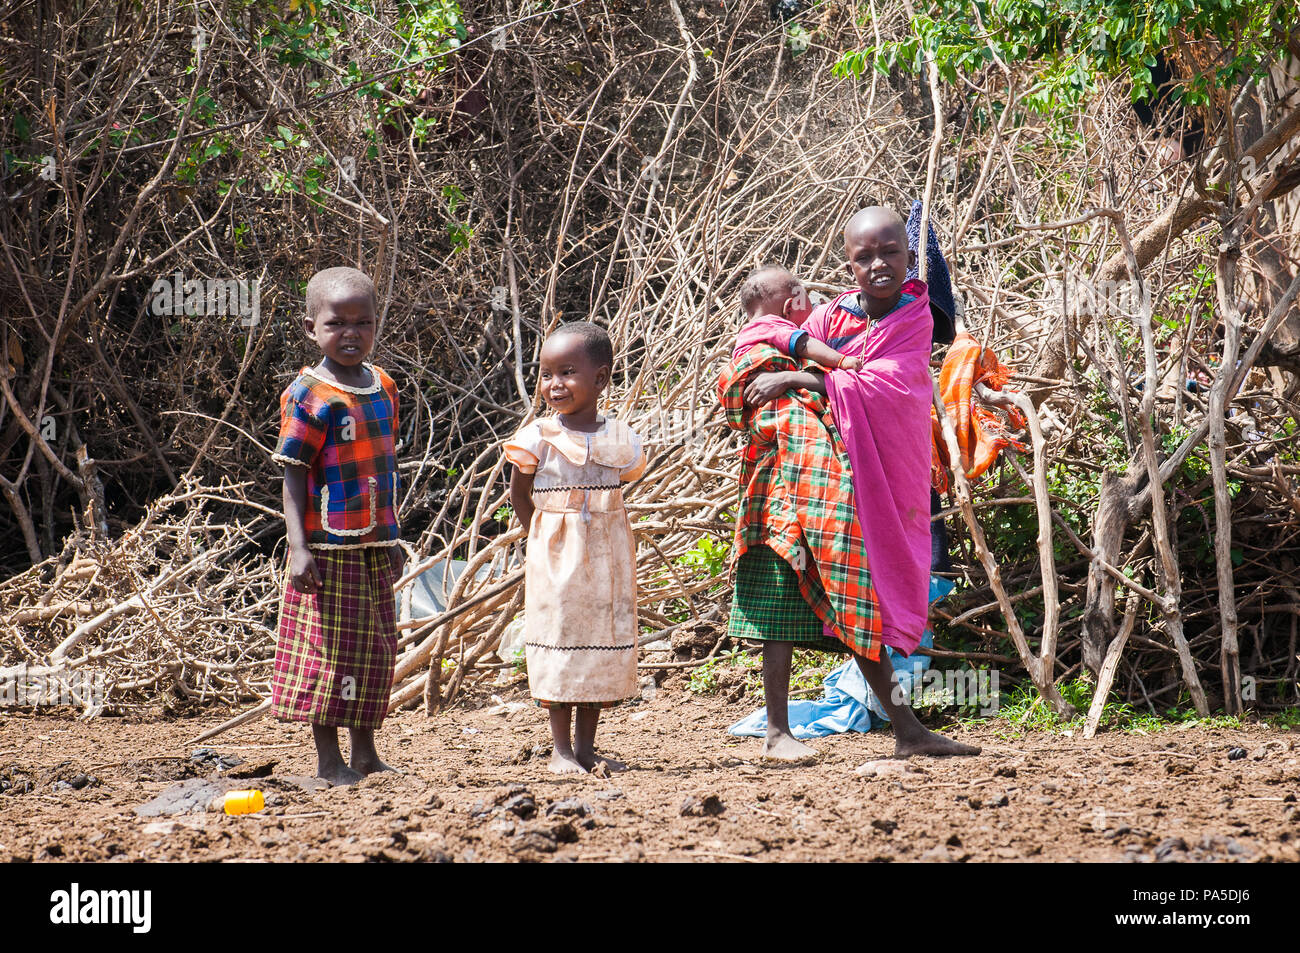 AMBOSELI, KENYA - 10 ottobre 2009: Unidentified Massai donna e bambini indossare tribali vestiti tipici in Kenya, Ott 10, 2009. Massai le persone sono un Foto Stock